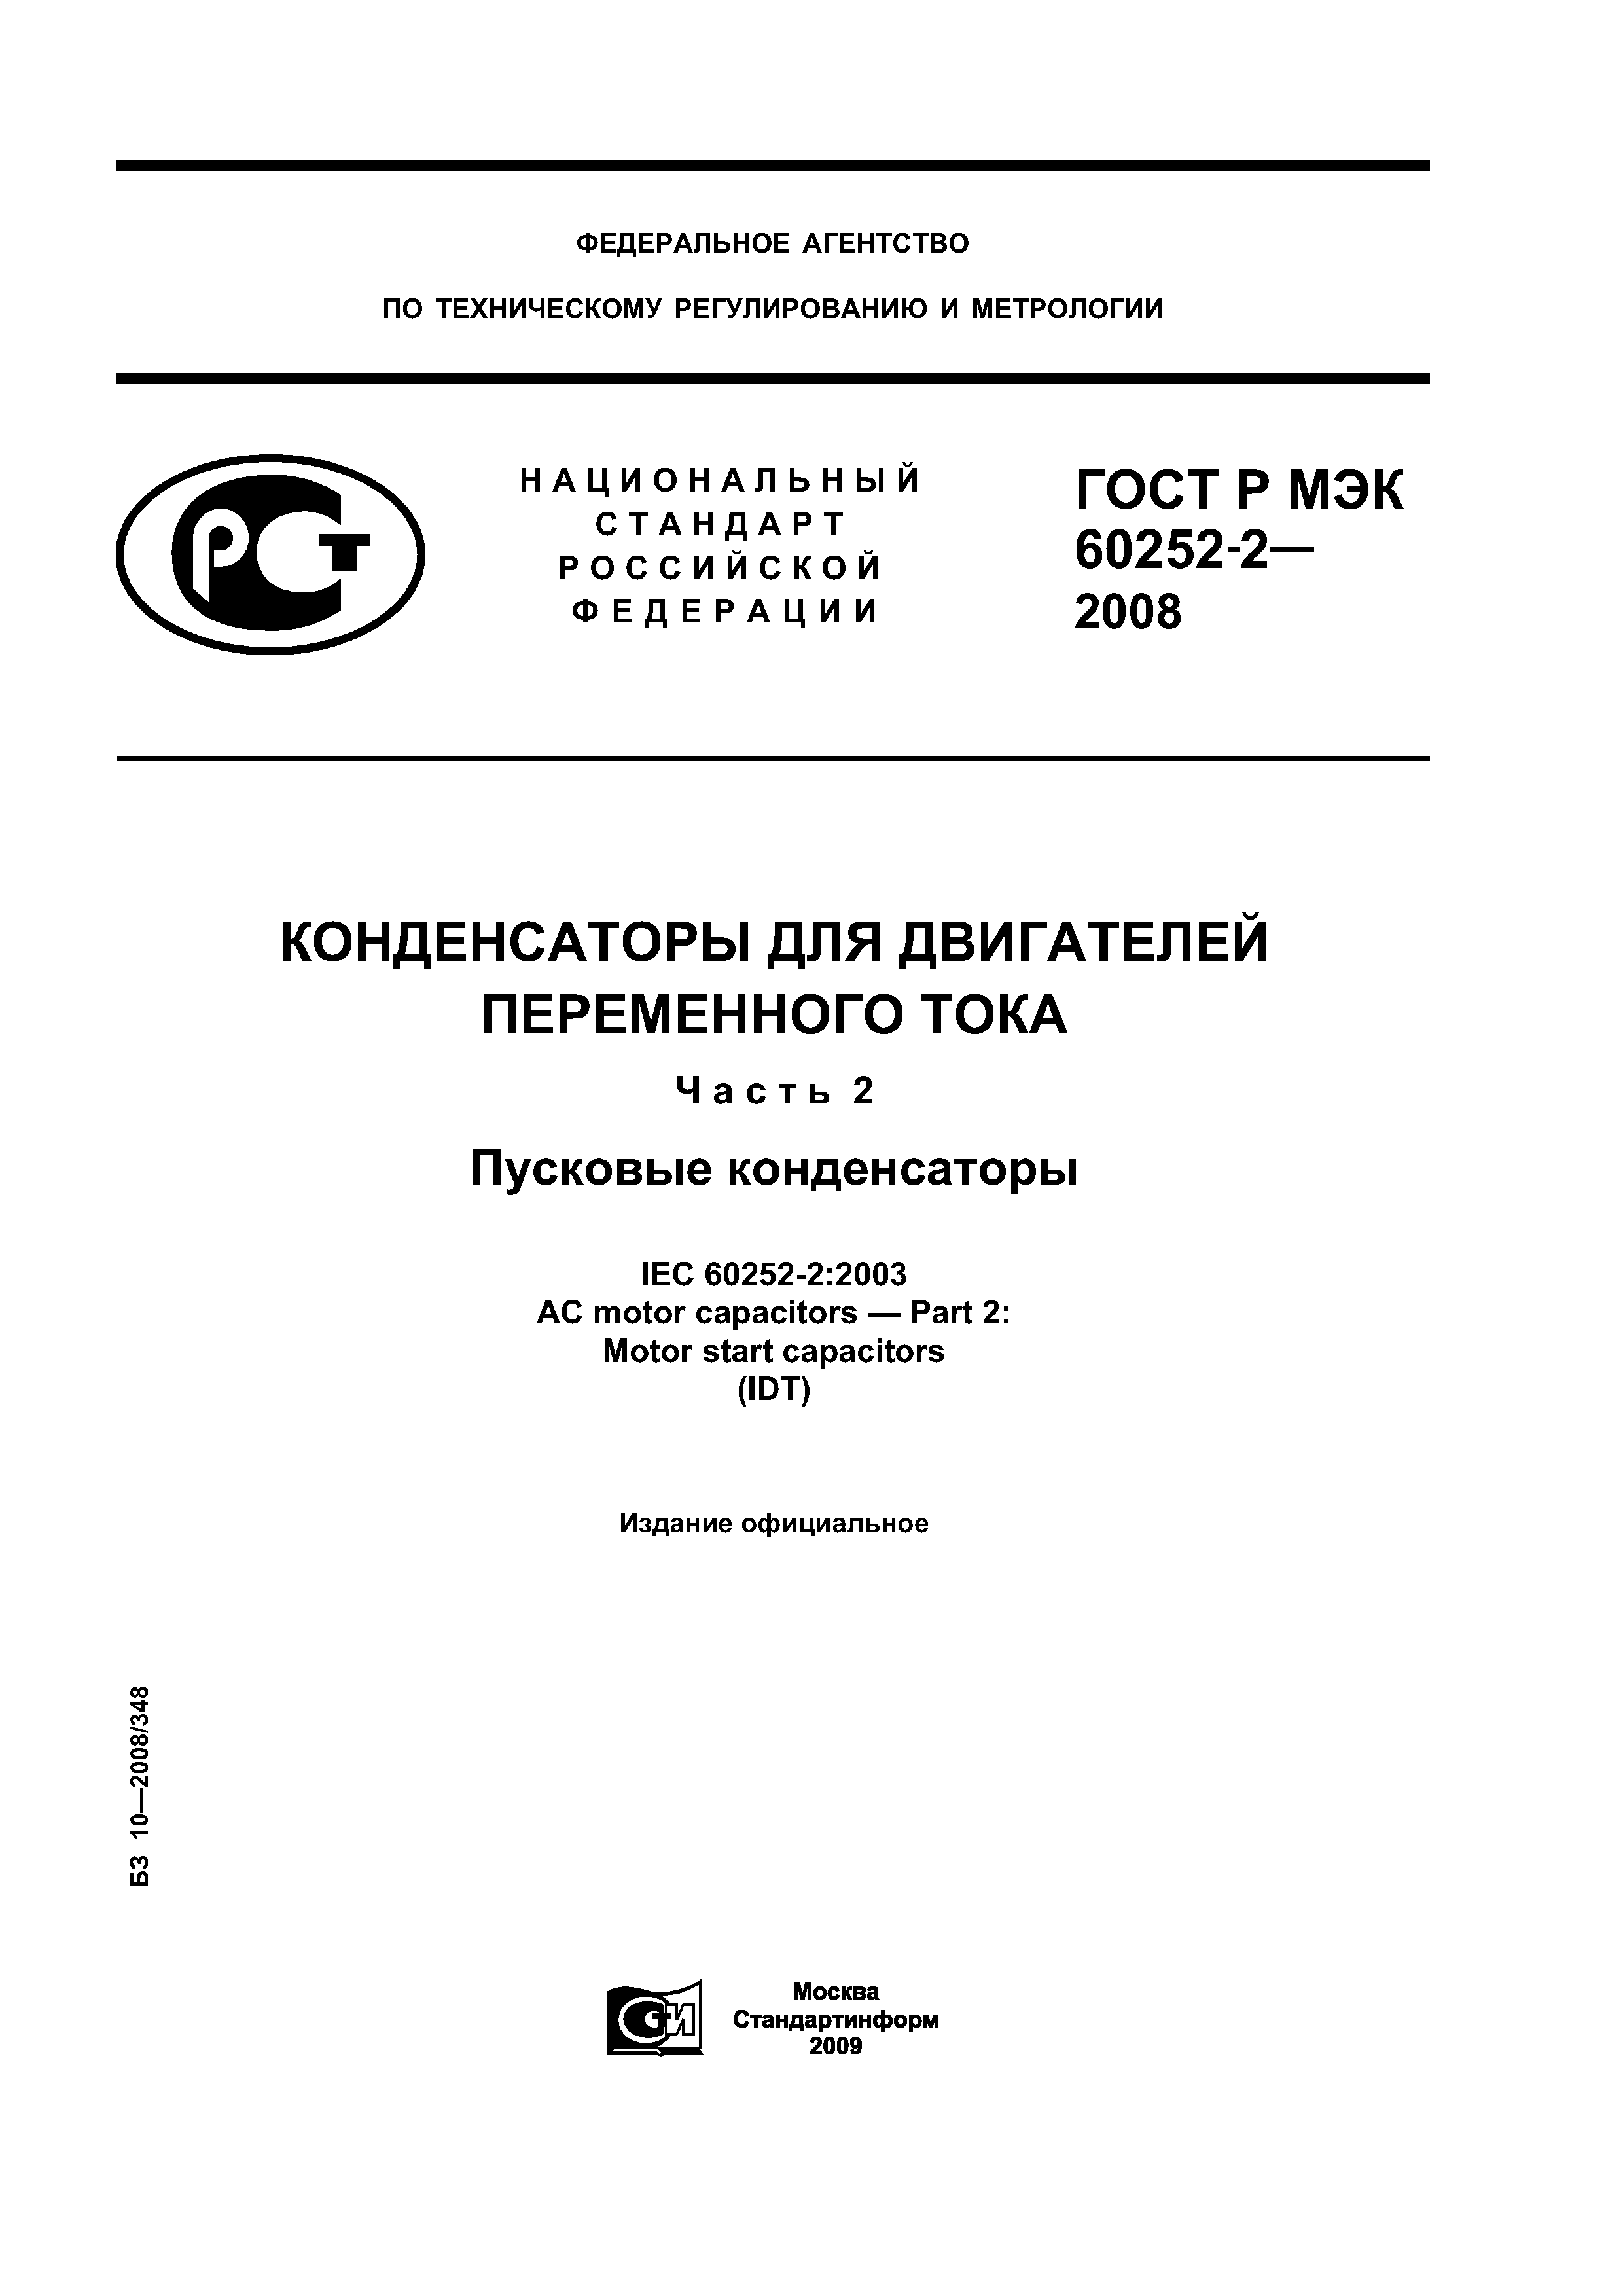 ГОСТ Р МЭК 60252-2-2008